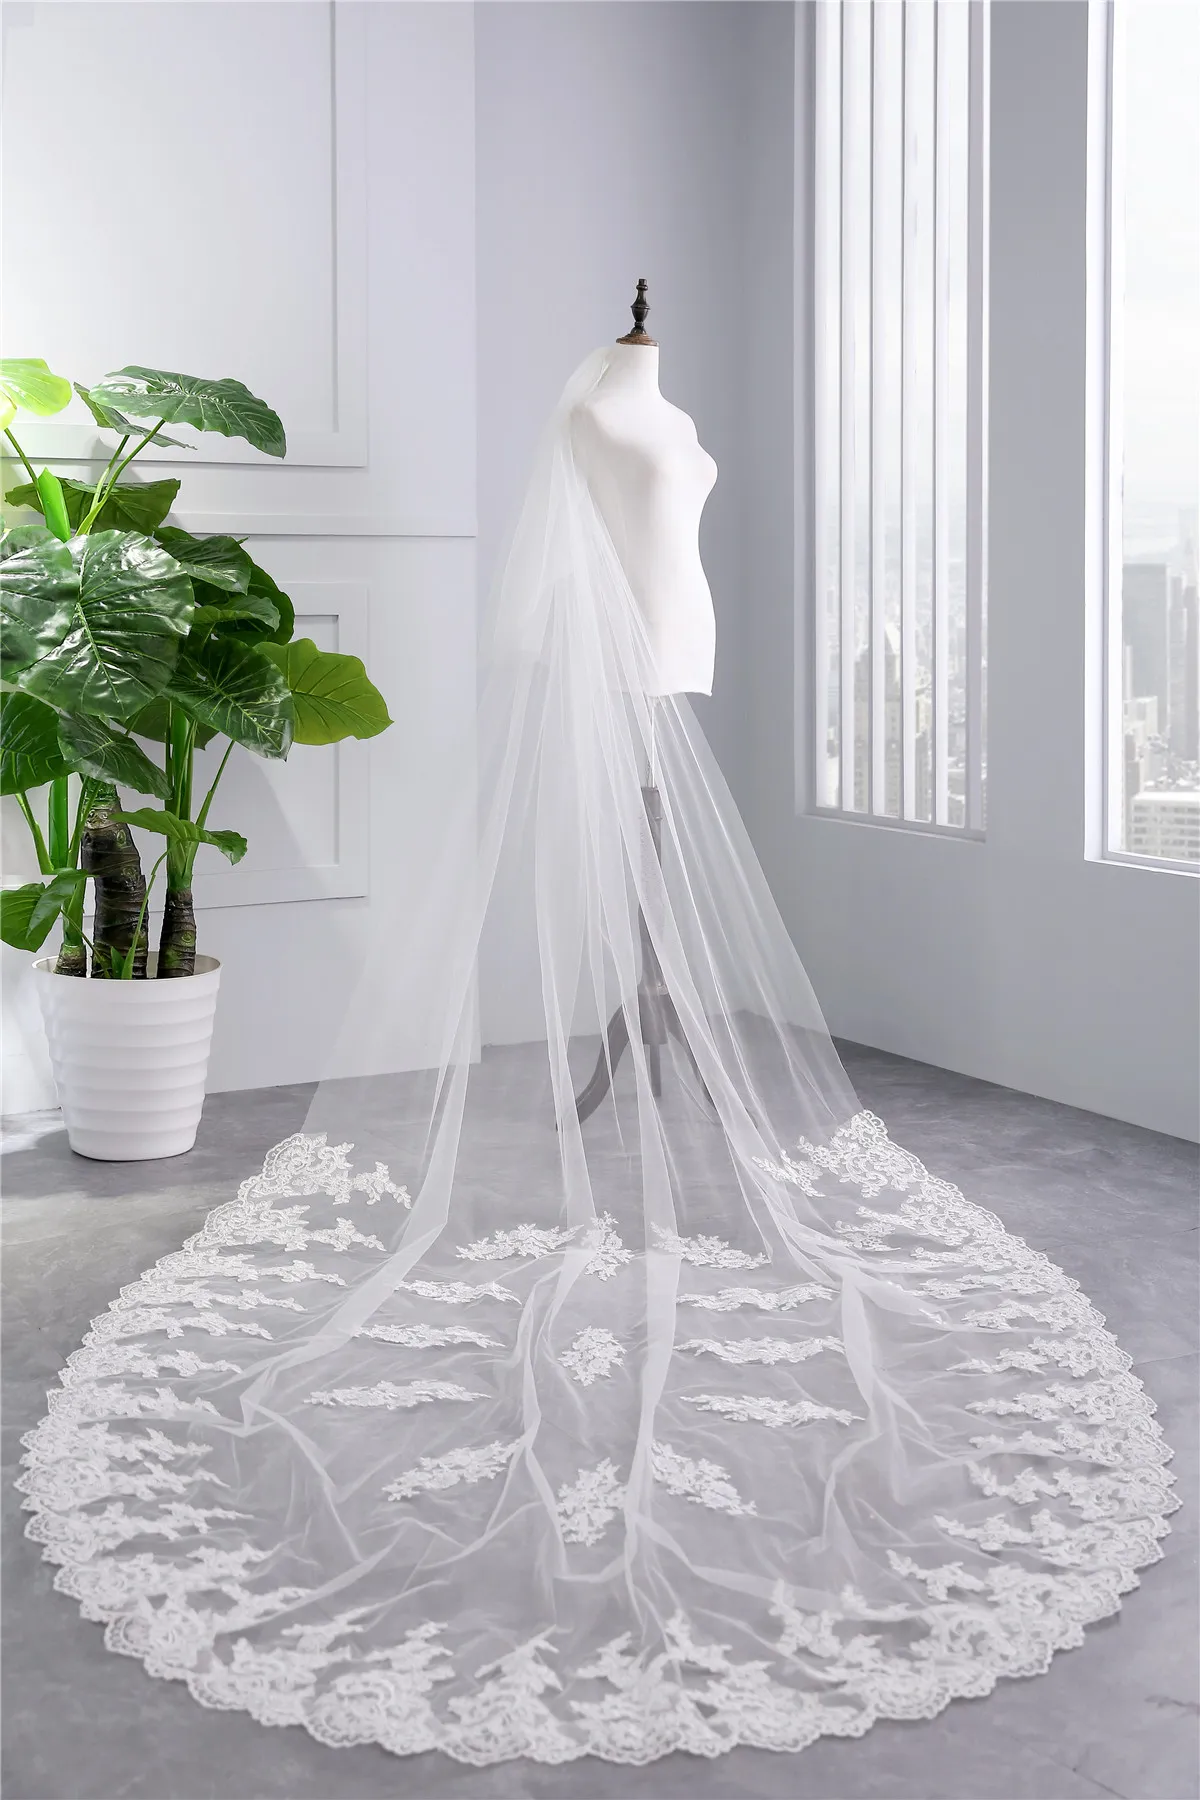 Impressionante Longo Véus de Noiva véu de Casamento Macio de Tule 3.5 * 1.8 m 2 camadas véus de casamento com borda applique pente